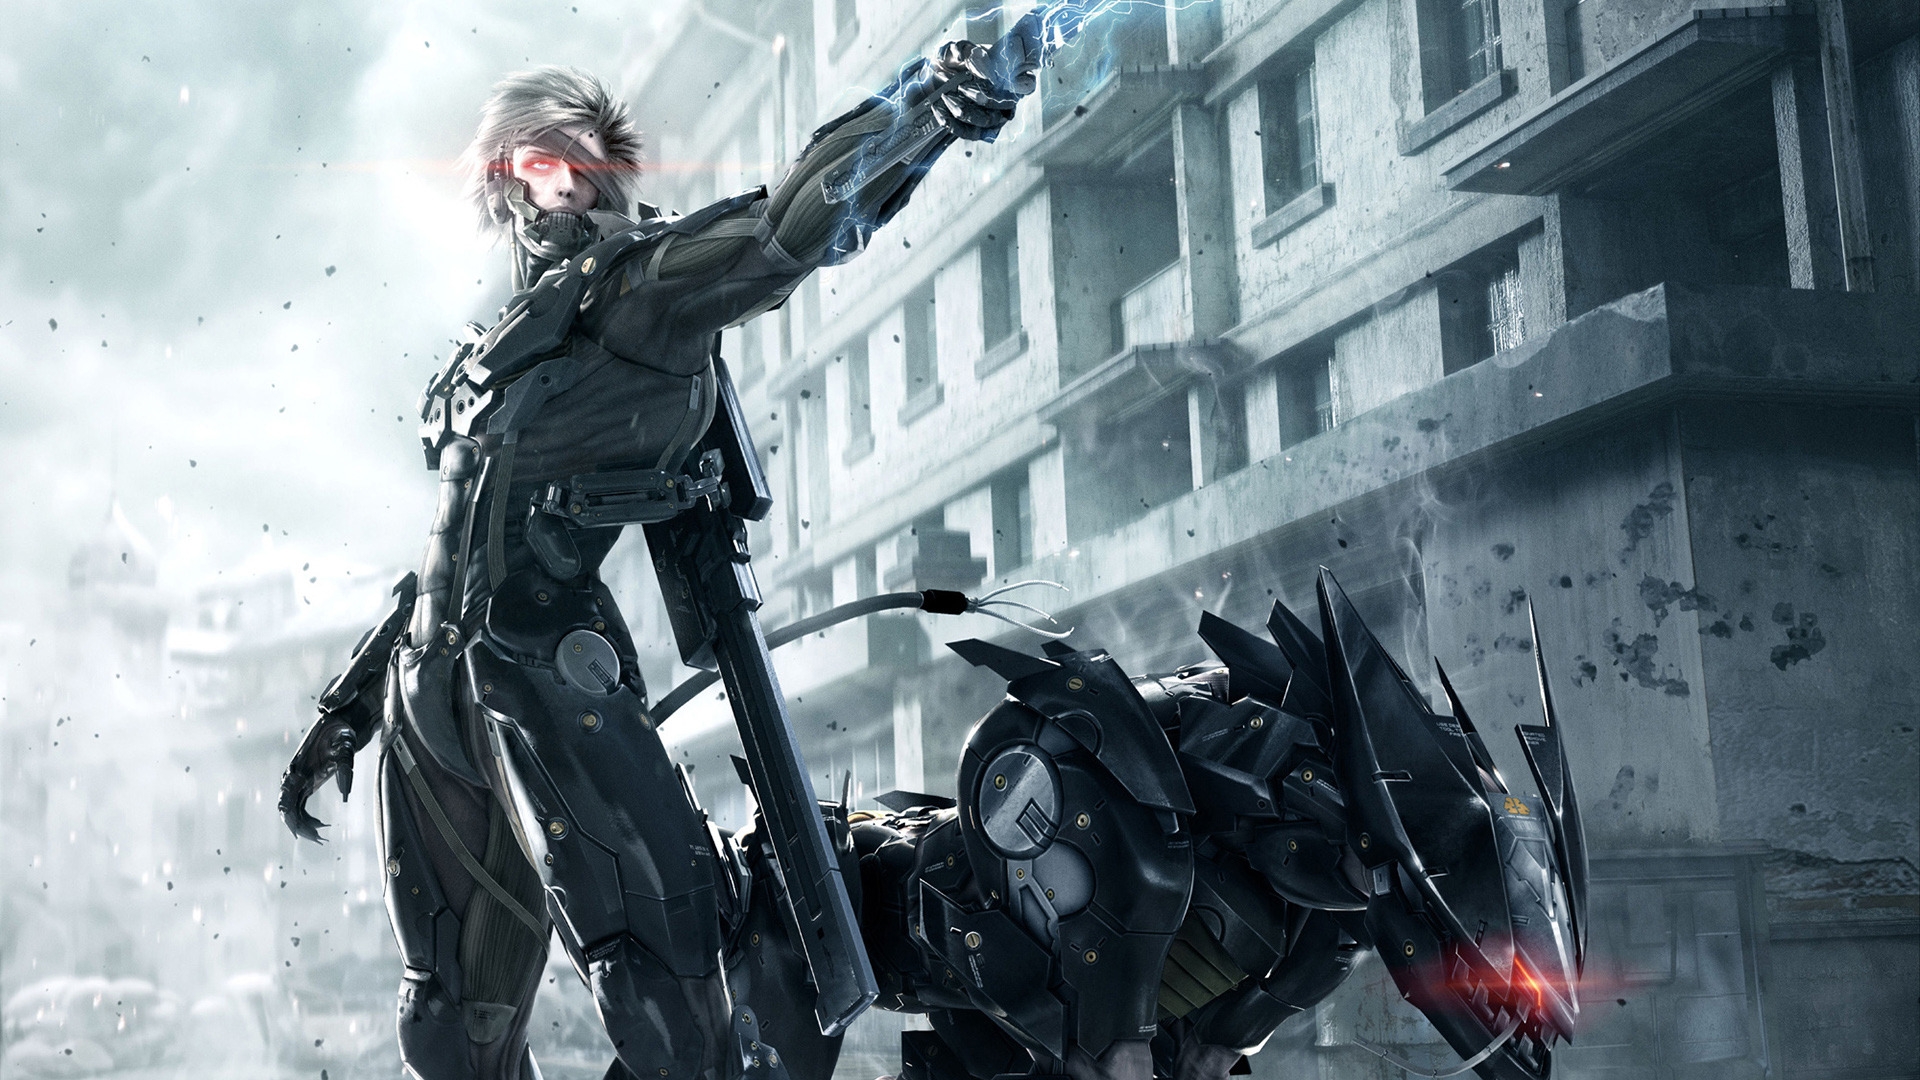 Metal Gear Rising Revengeance for 1920 x 1080 HDTV 1080p resolution